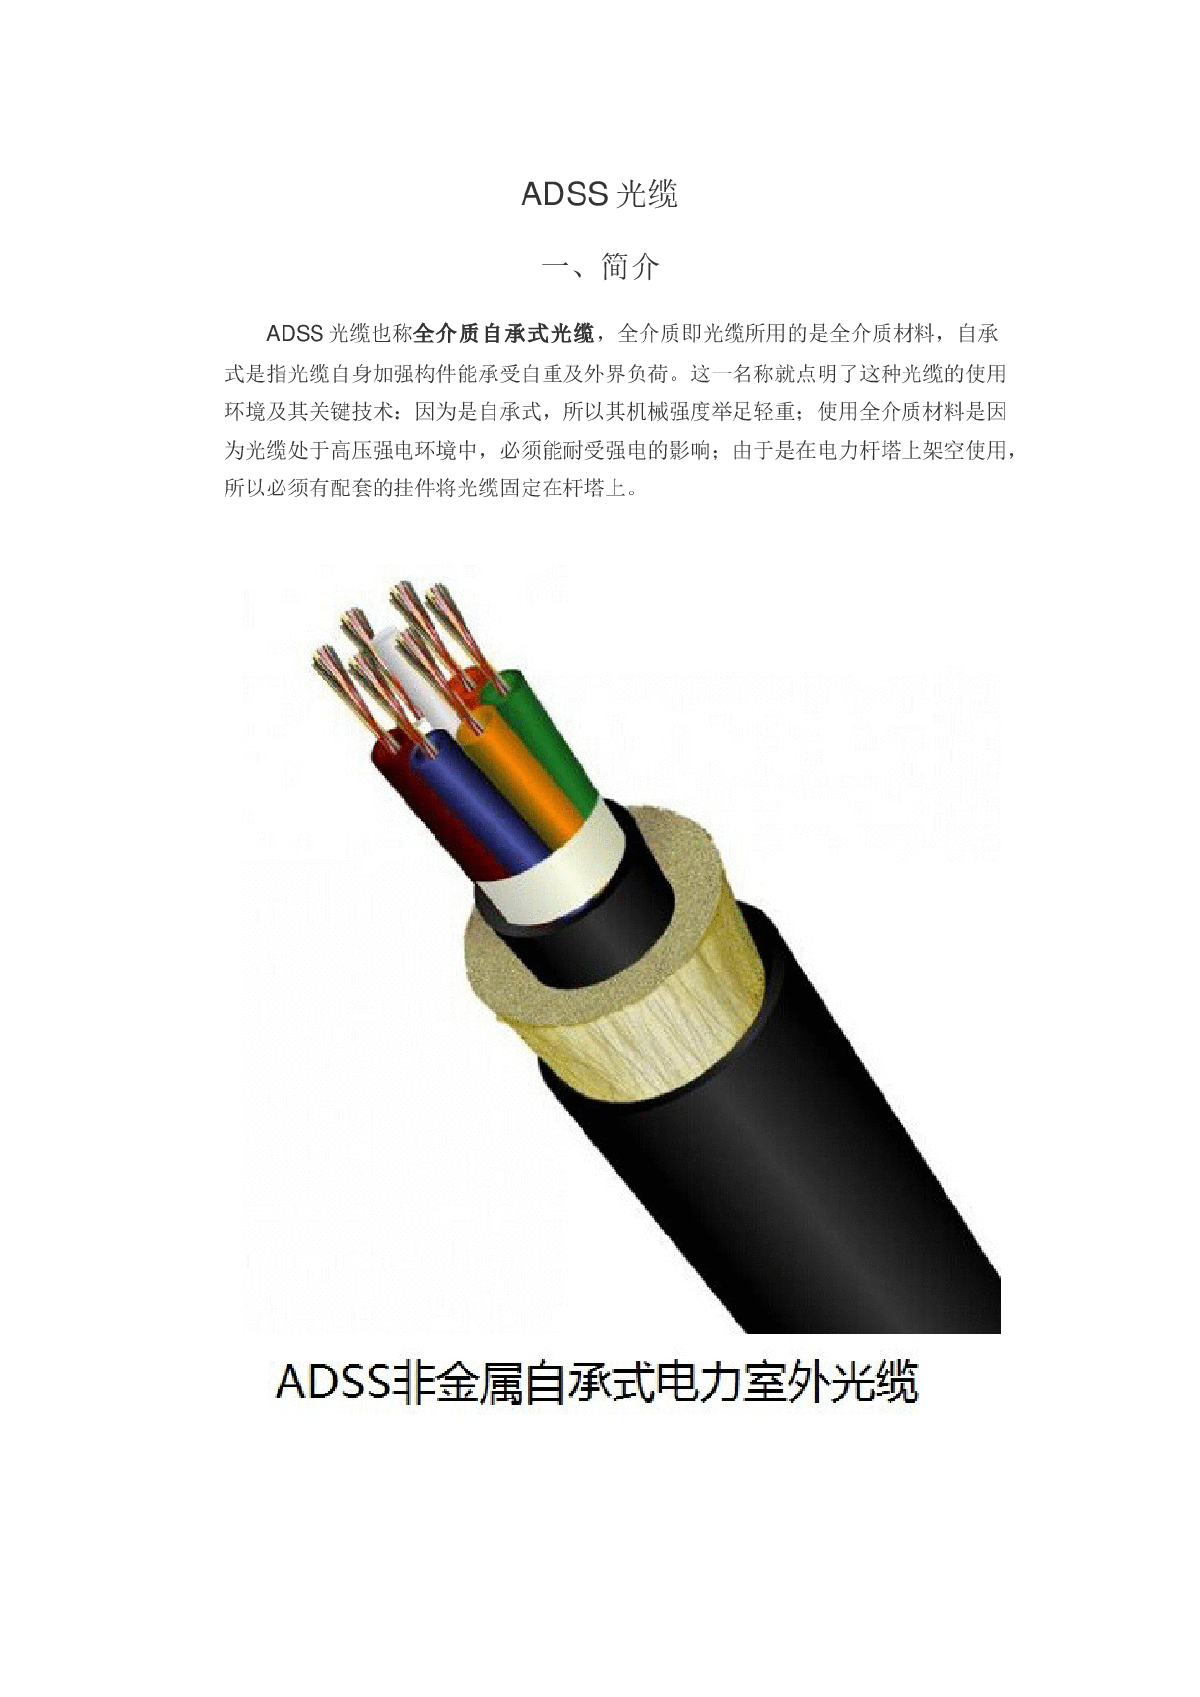 ADSS全介质自承式光缆结构简介